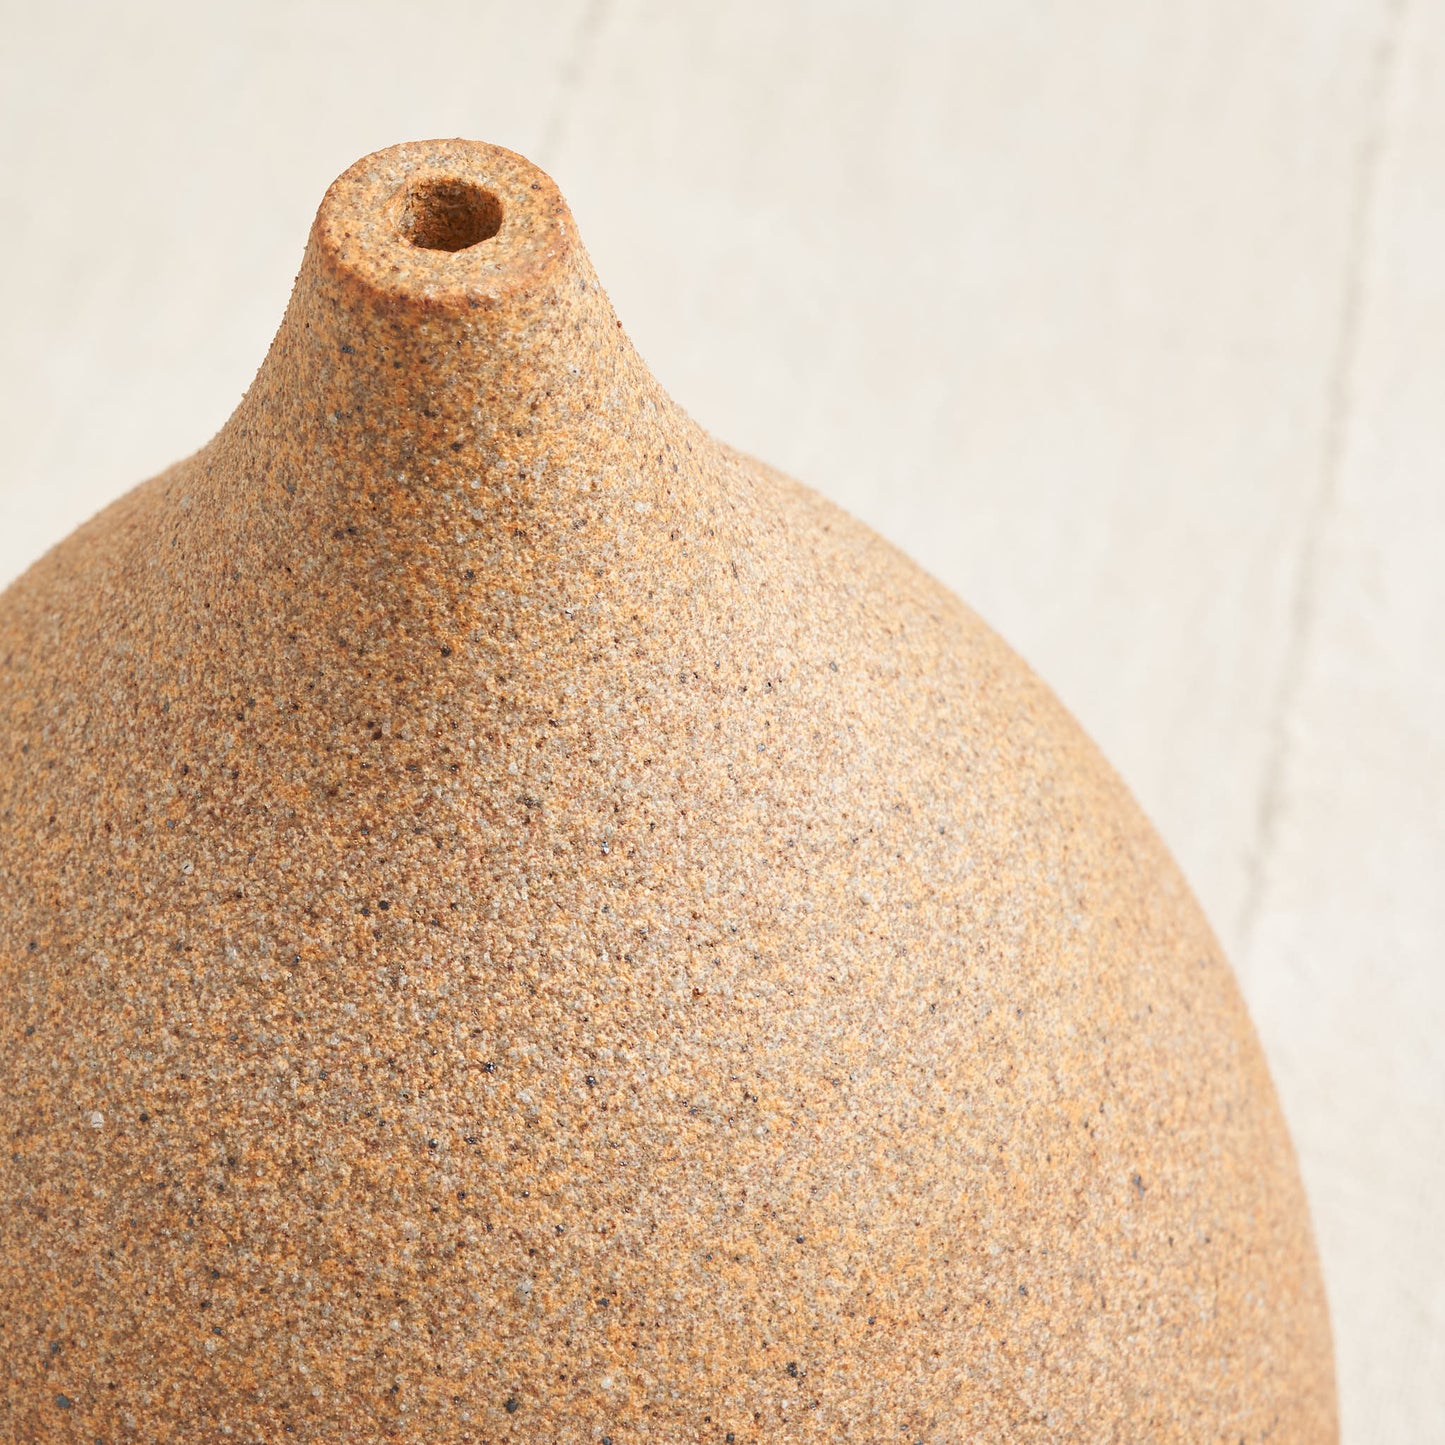 Ceramic Bird Feeder, Sand